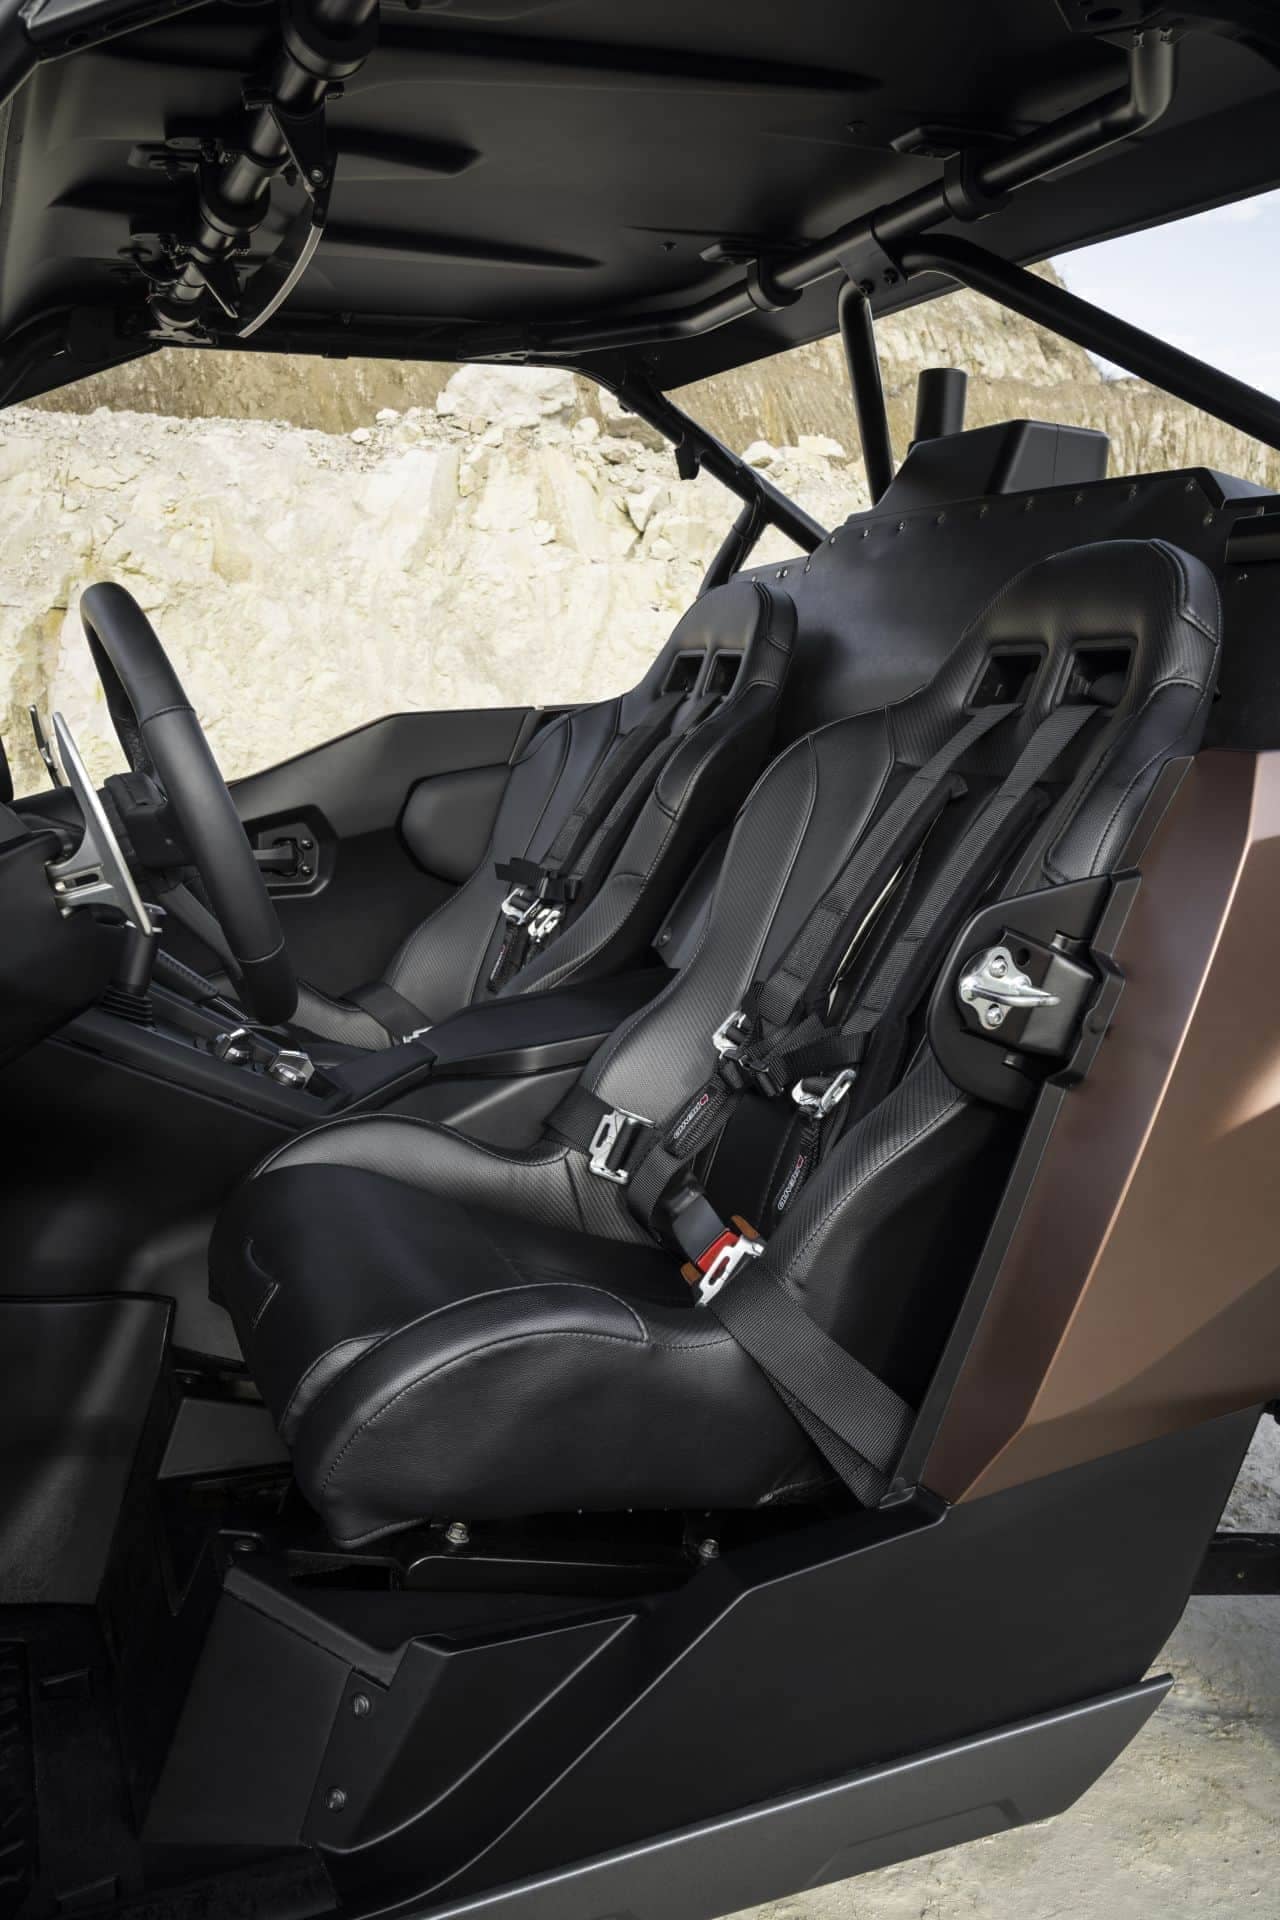 LEXUSが水素エンジンを搭載したオフロード車のコンセプト「Lexus ROV」を発表 ― 発電するのではなく水素を燃焼させて走る